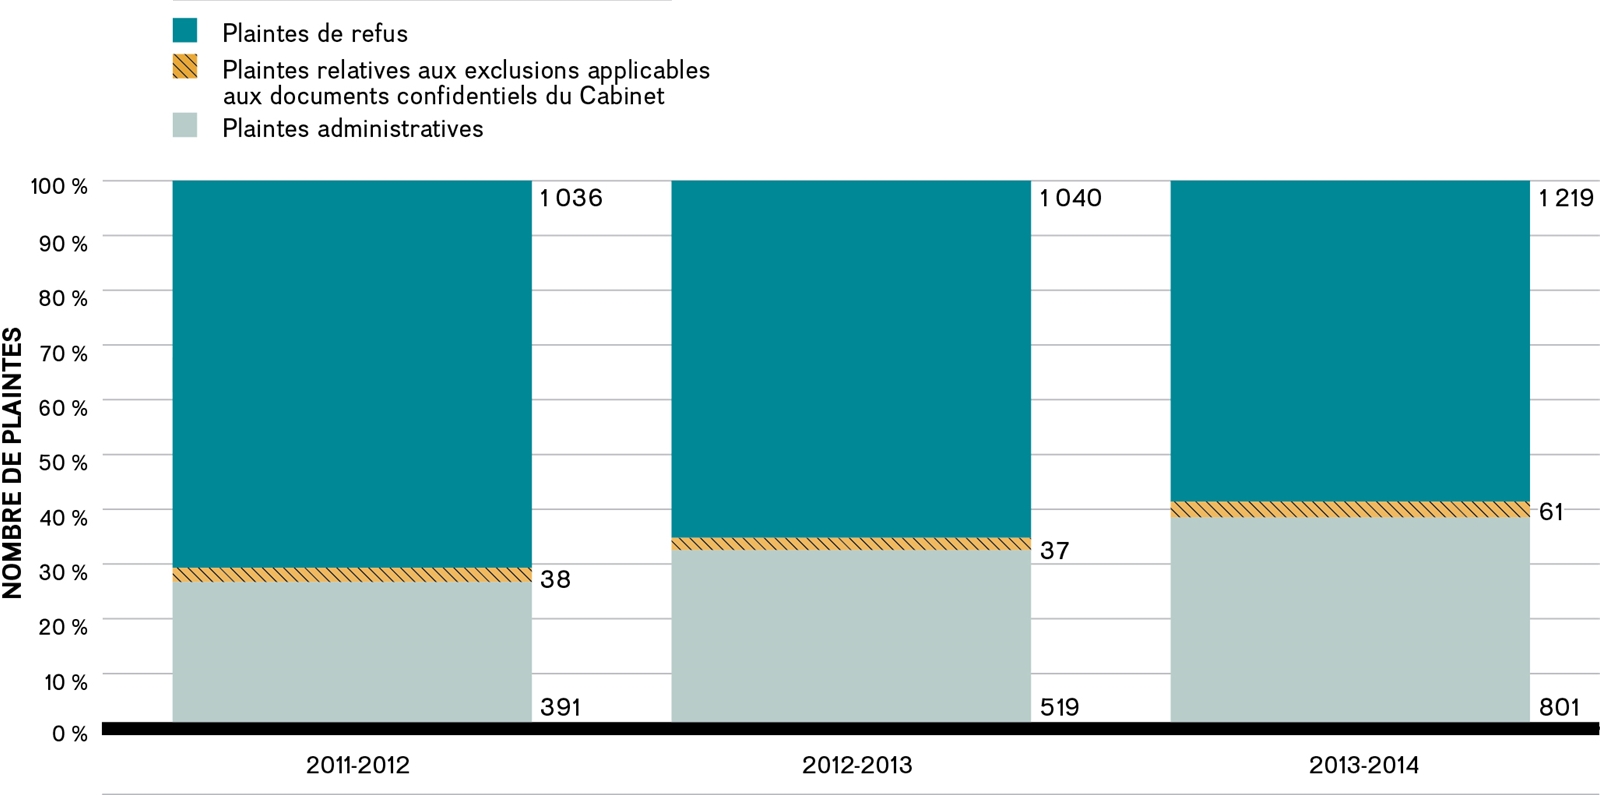 Tendance observée dans le cas des plaintes enregistrées, de 2011-2012 à 2013-2014